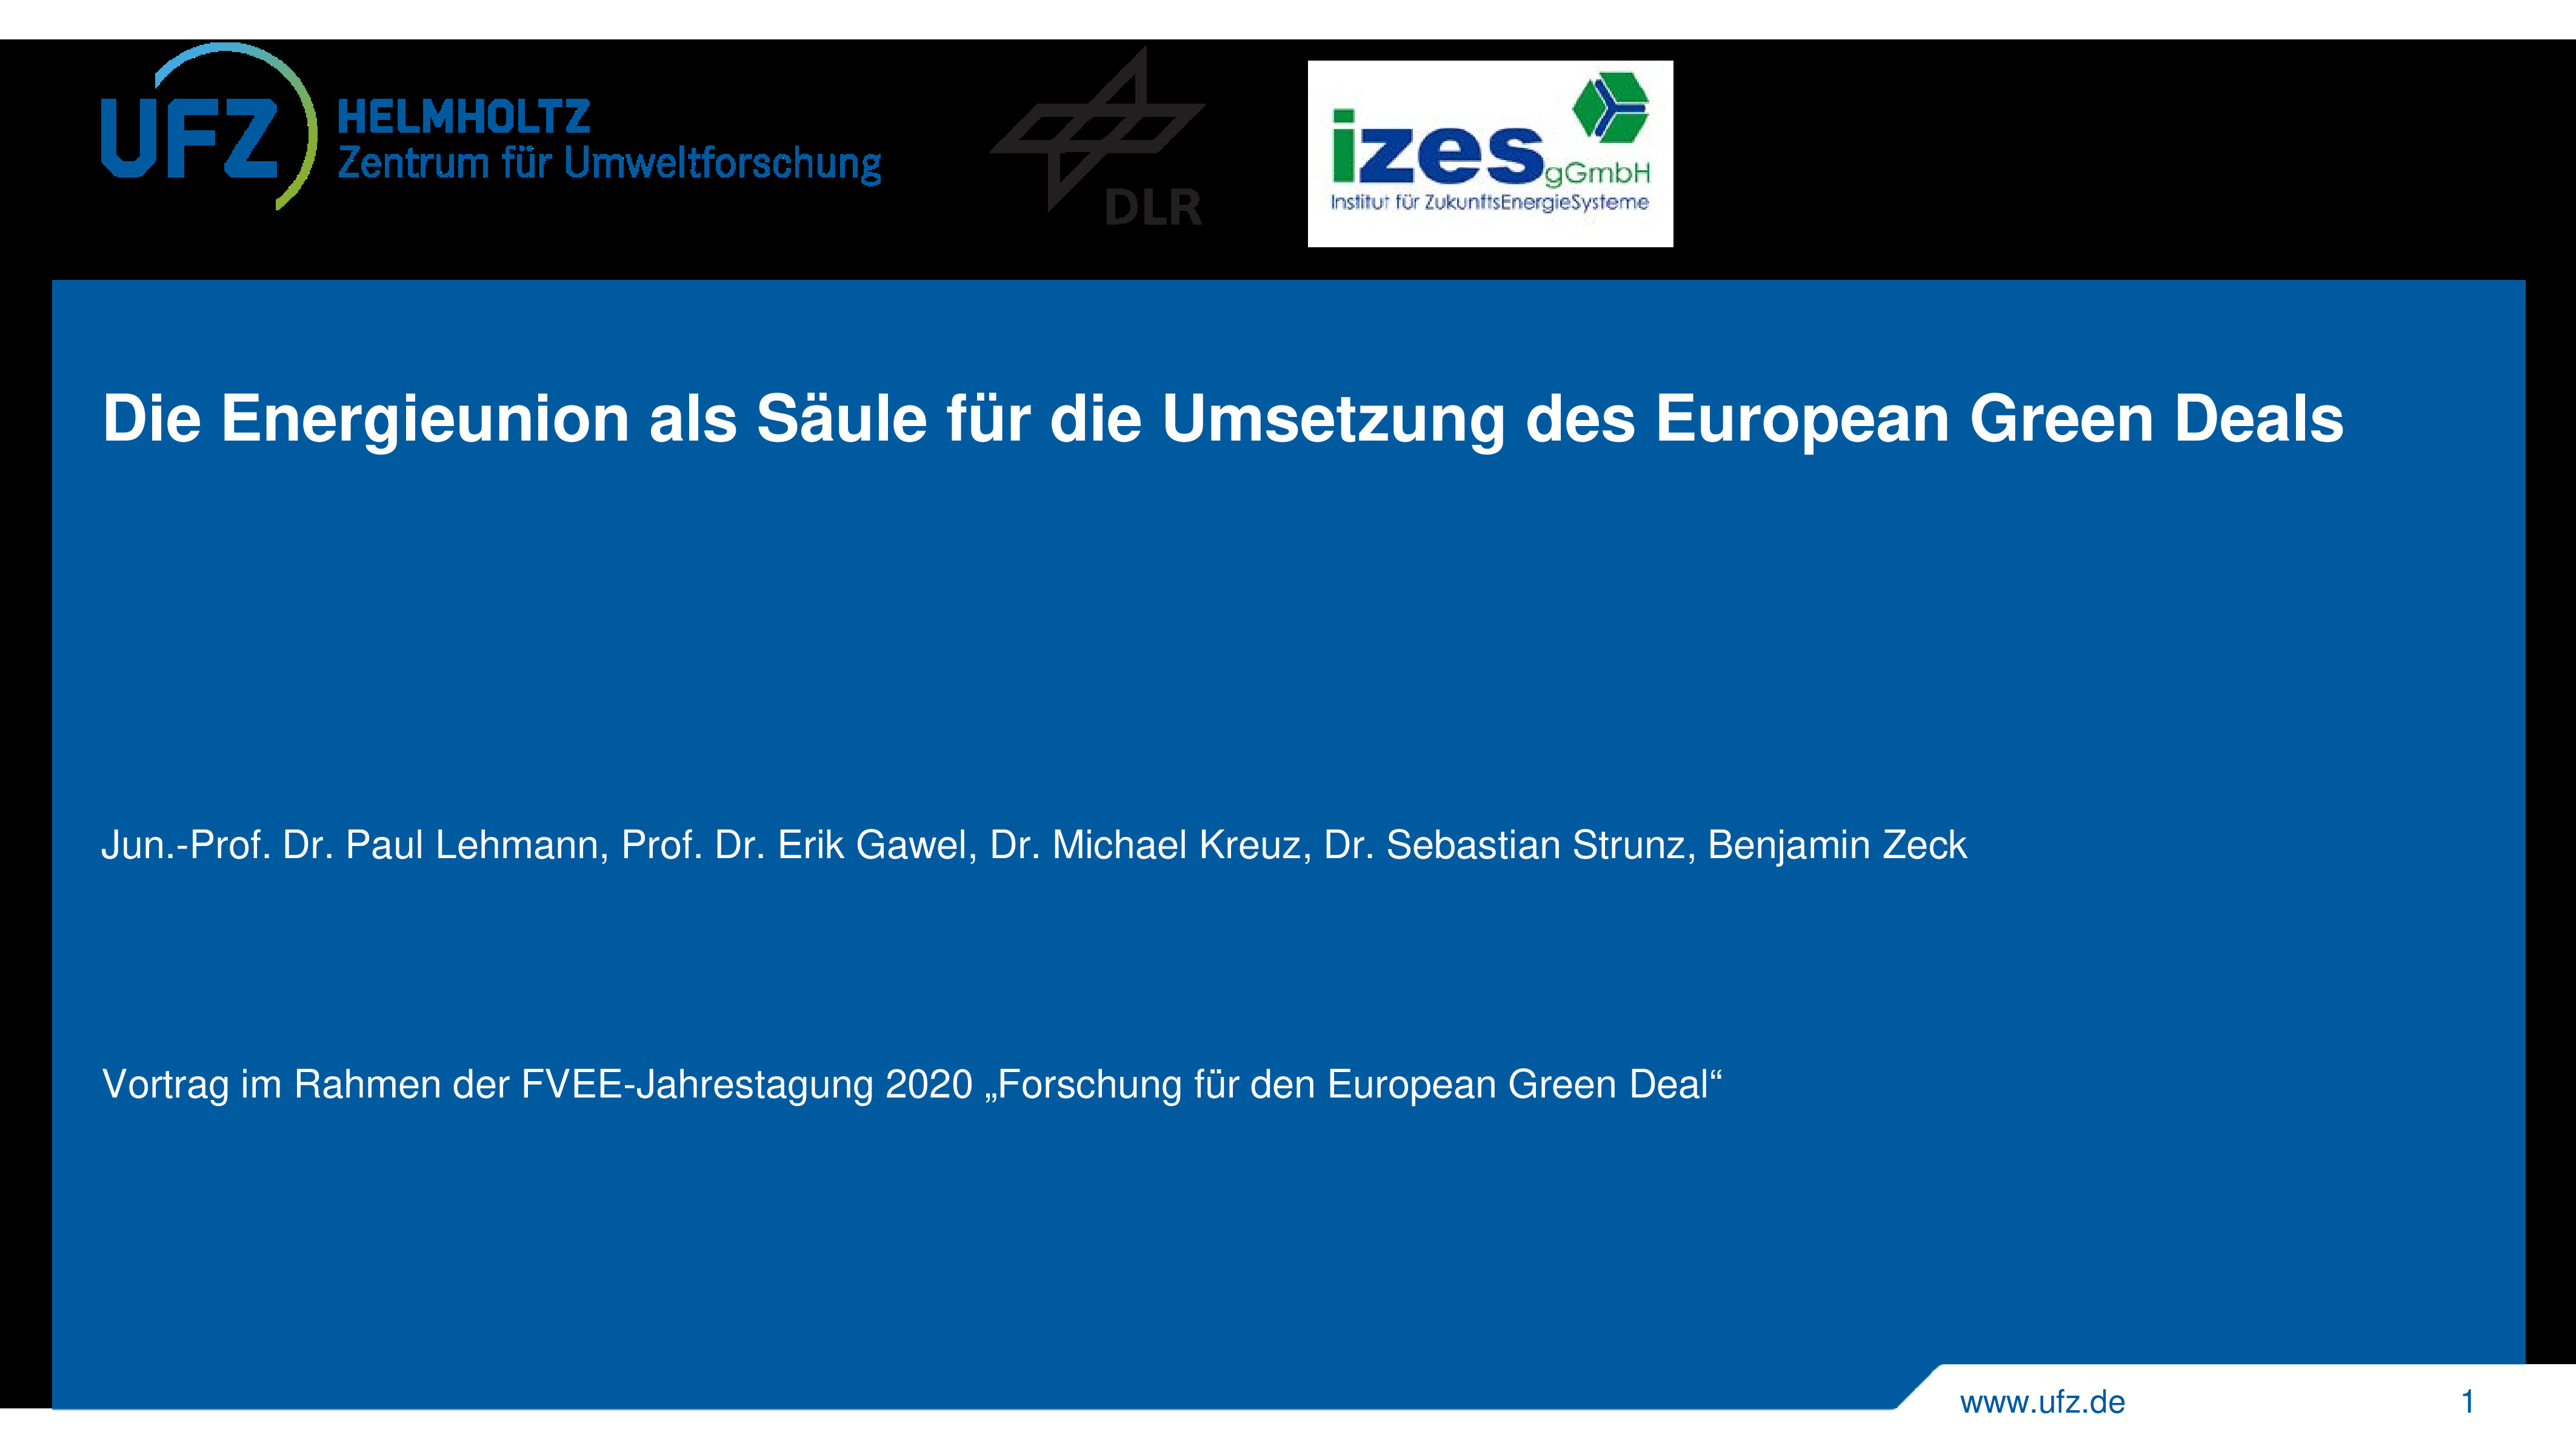 "Forschung für den European Green Deal" – Vortragsfolien zur Jahrestagung 2020